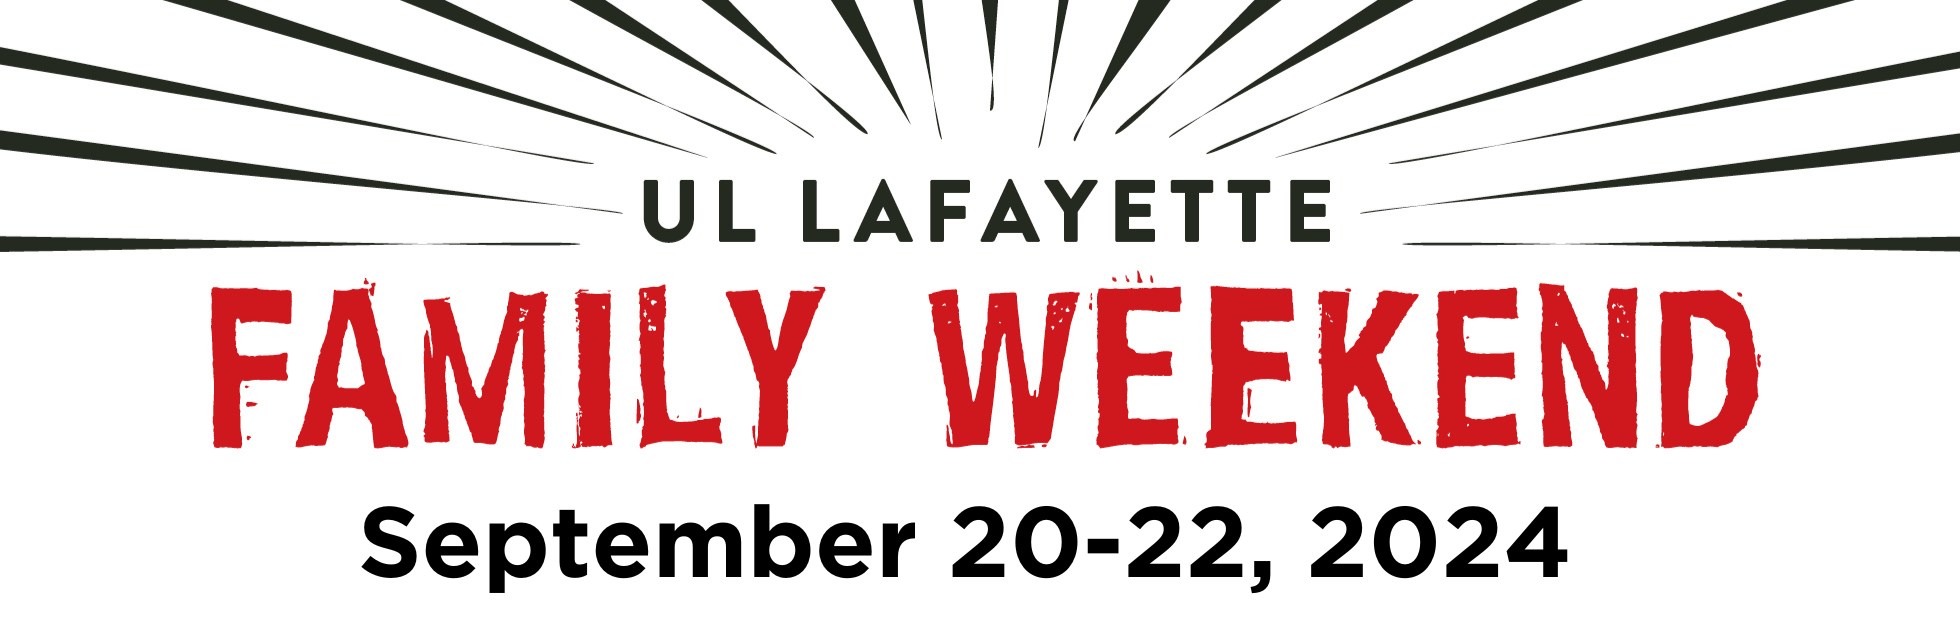 UL Lafayette Family Weekend September 20-22, 2024